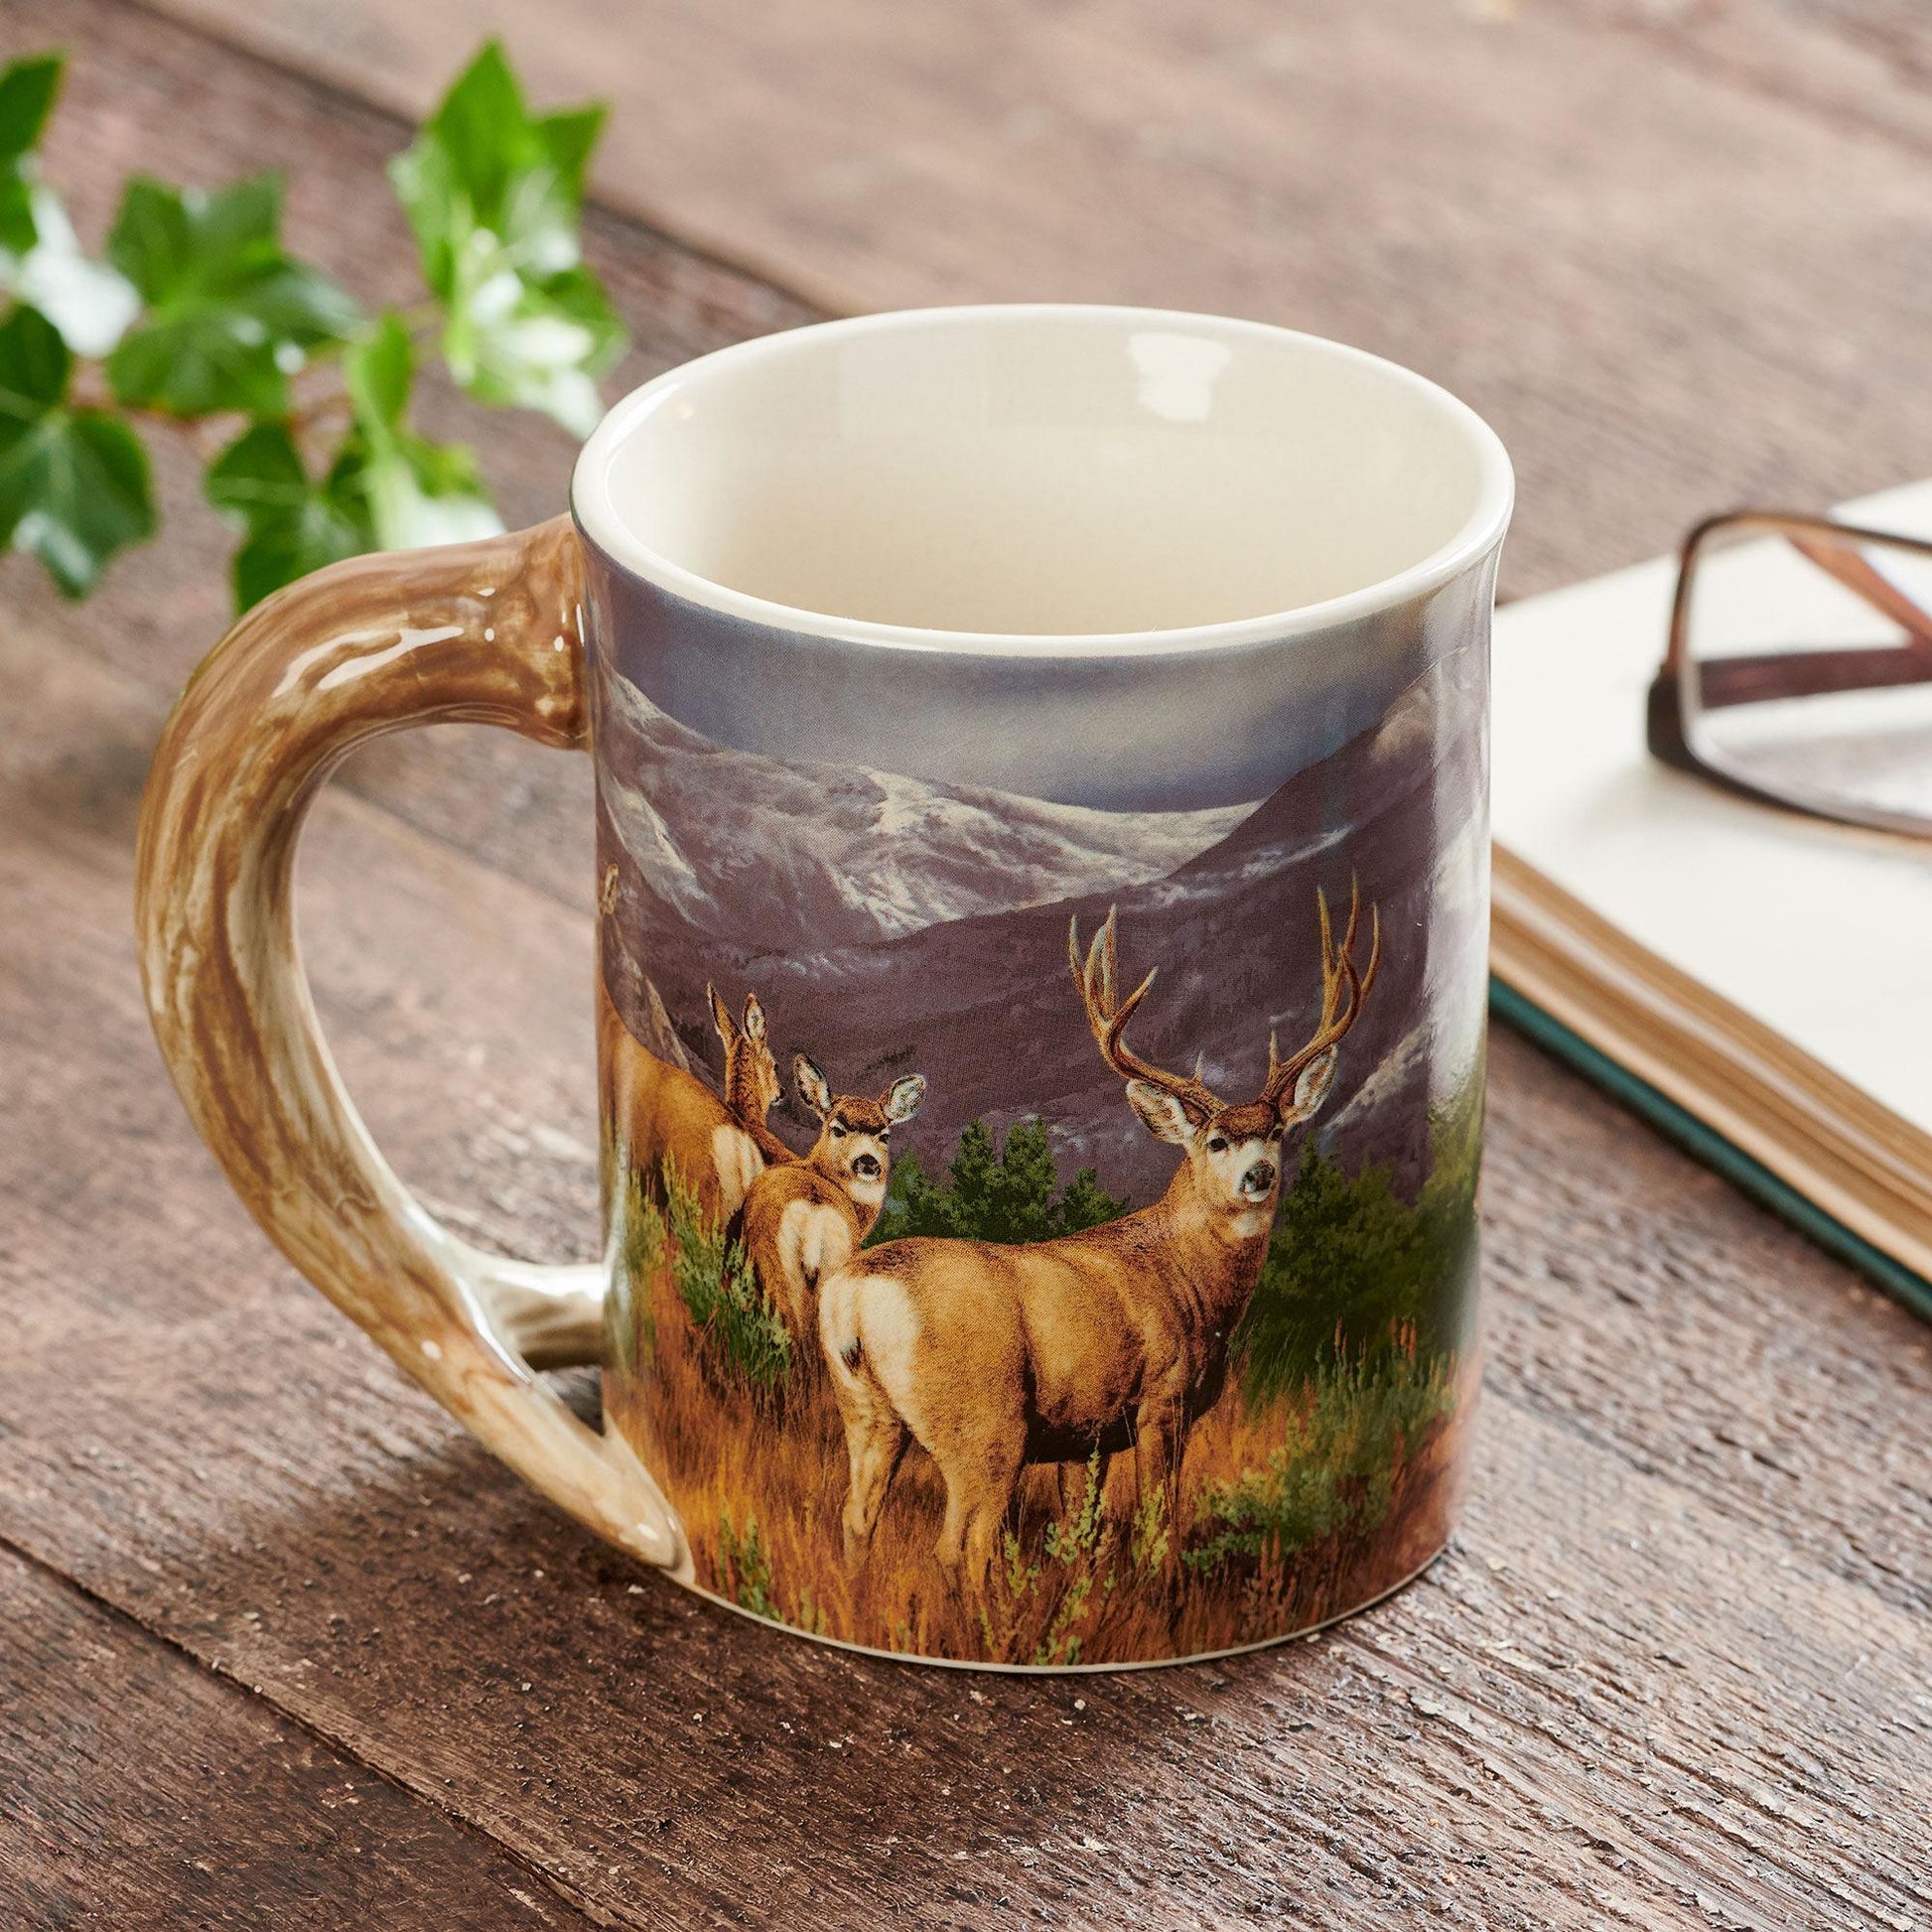 https://wildwings.com/cdn/shop/products/last-glance-mule-deer-sculpted-mug-rosemary-millette-8955712165.jpg?v=1660335306&width=1946